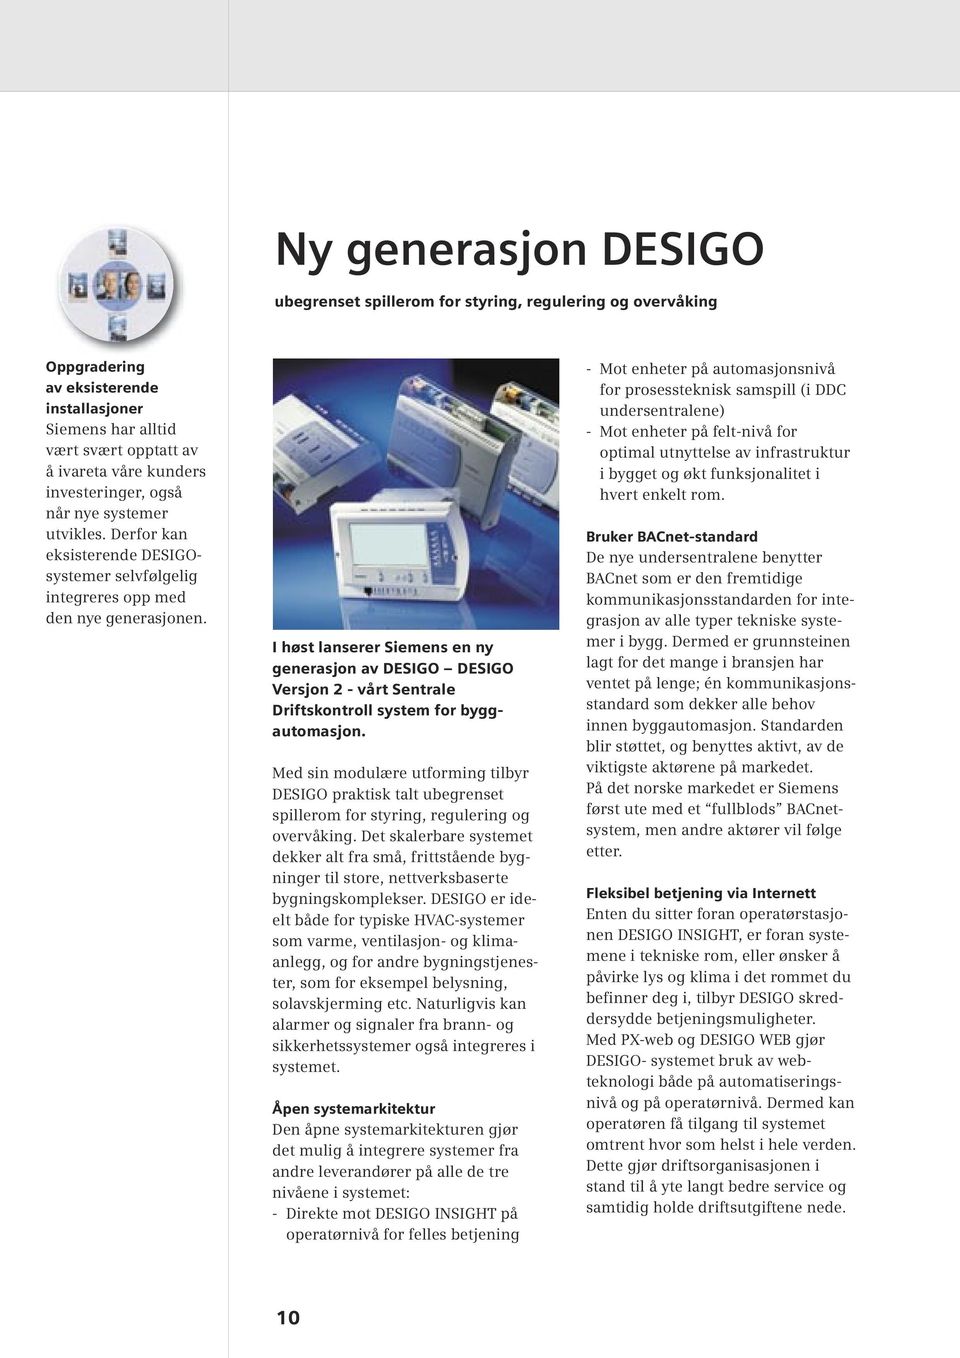 I høst lanserer Siemens en ny generasjon av DESIGO DESIGO Versjon 2 - vårt Sentrale Driftskontroll system for byggautomasjon.